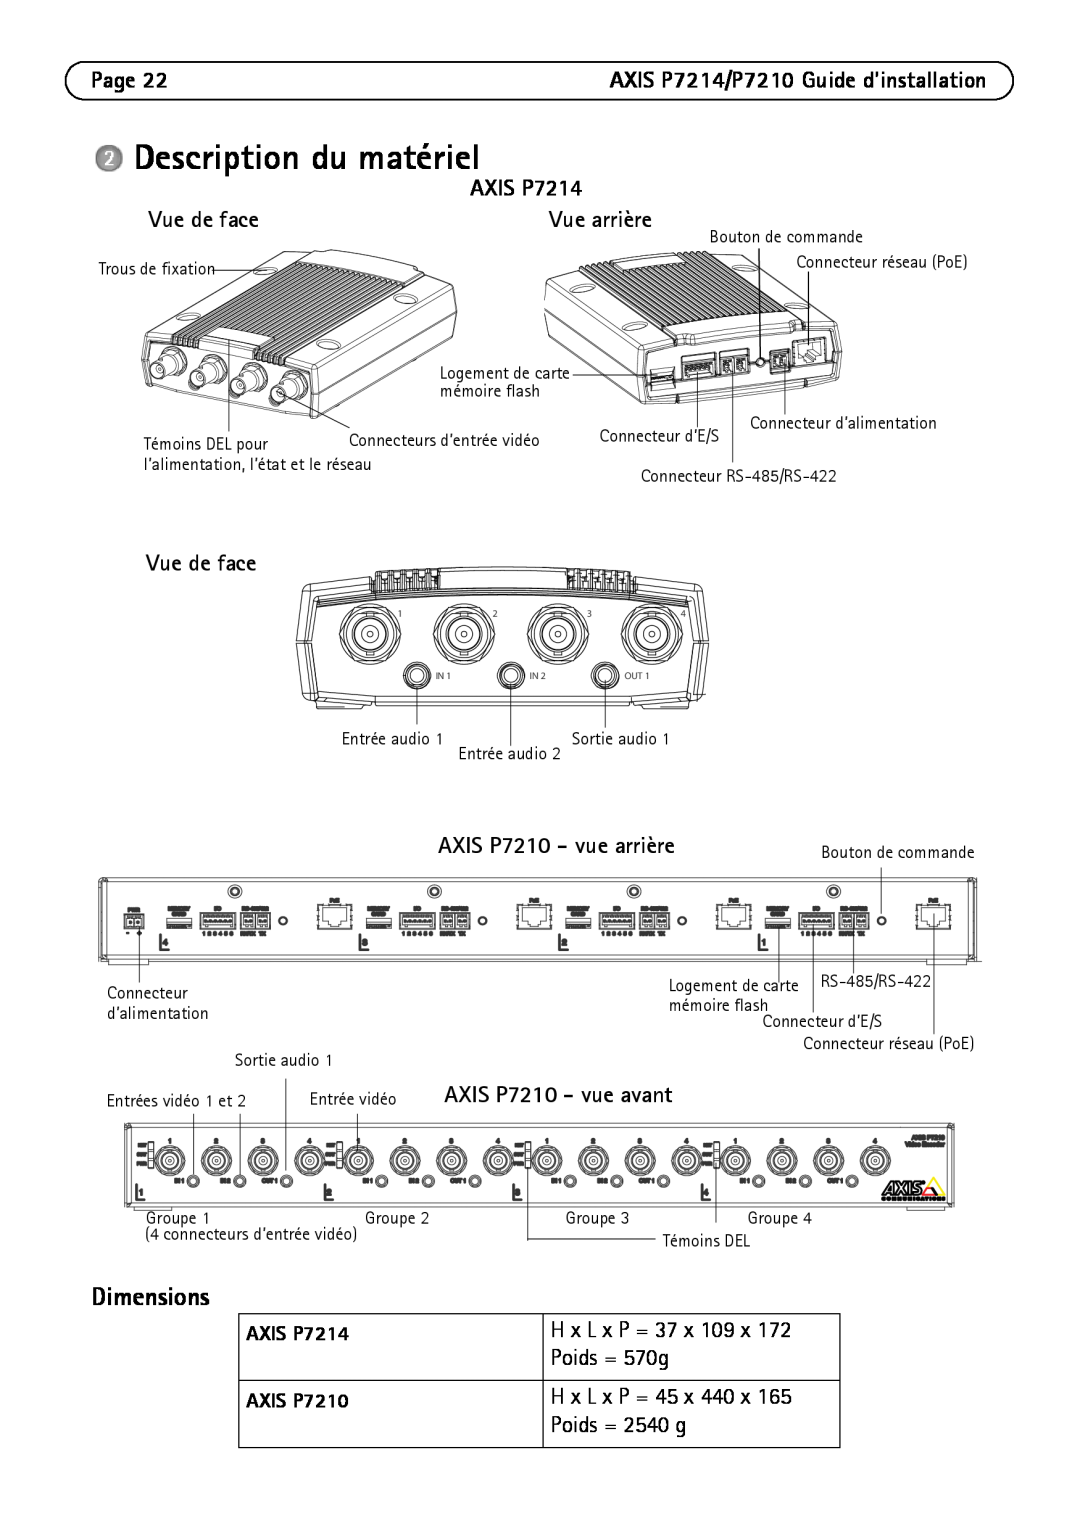 Axis Communications P7214/P7210 Description du matériel, Vue de face, AXIS P7210 - vue arrière, AXIS P7210 - vue avant 